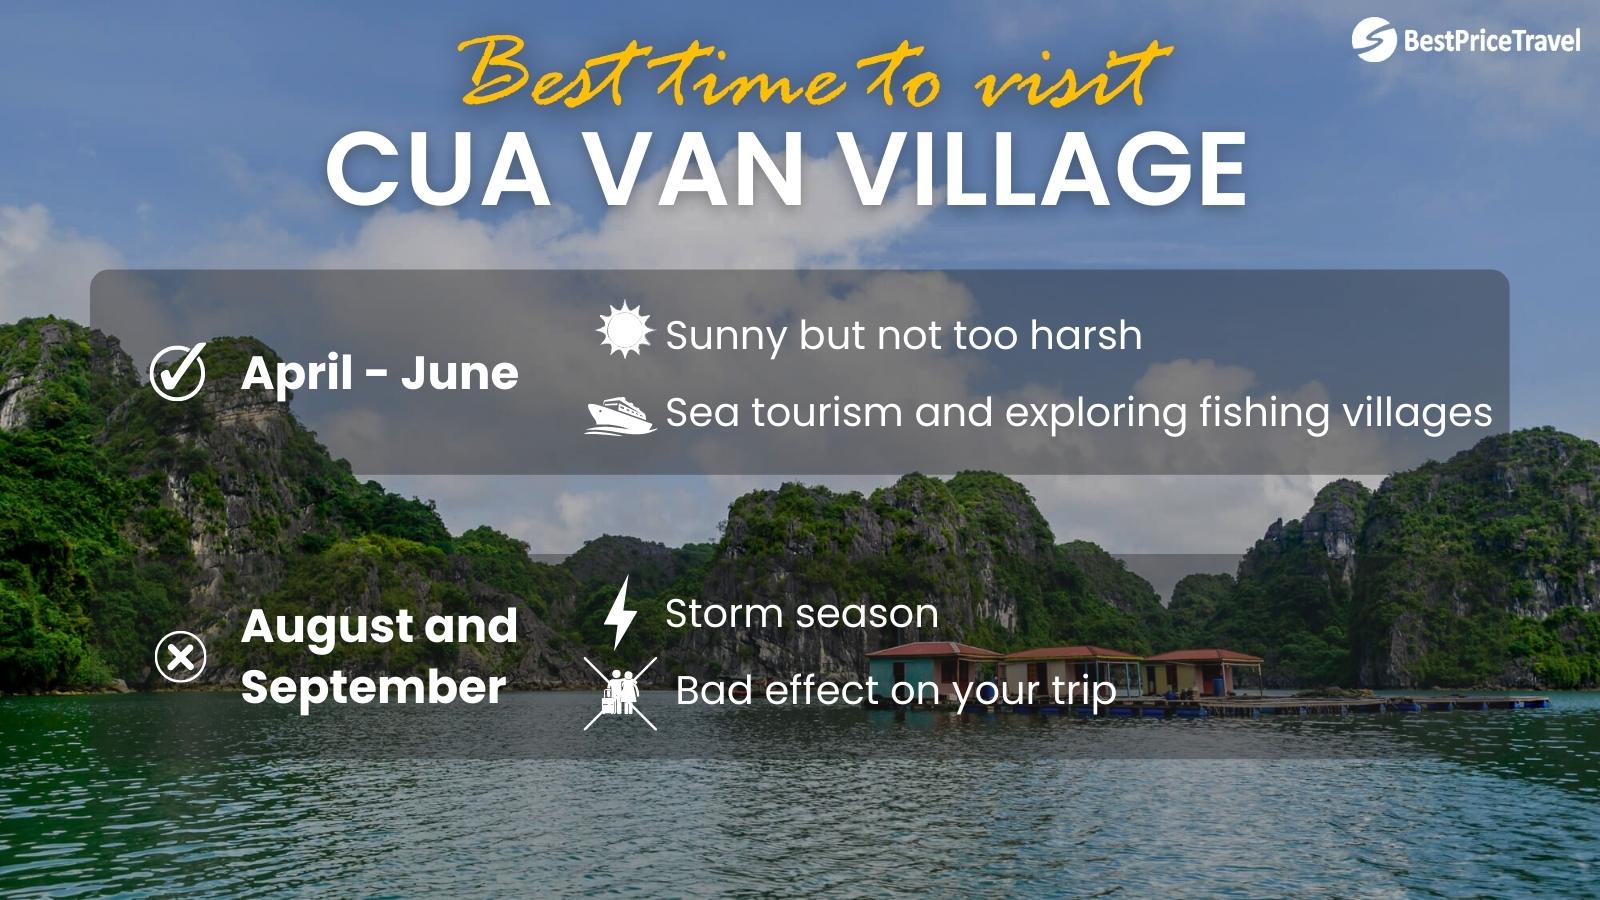 Best time to visit Cua Van